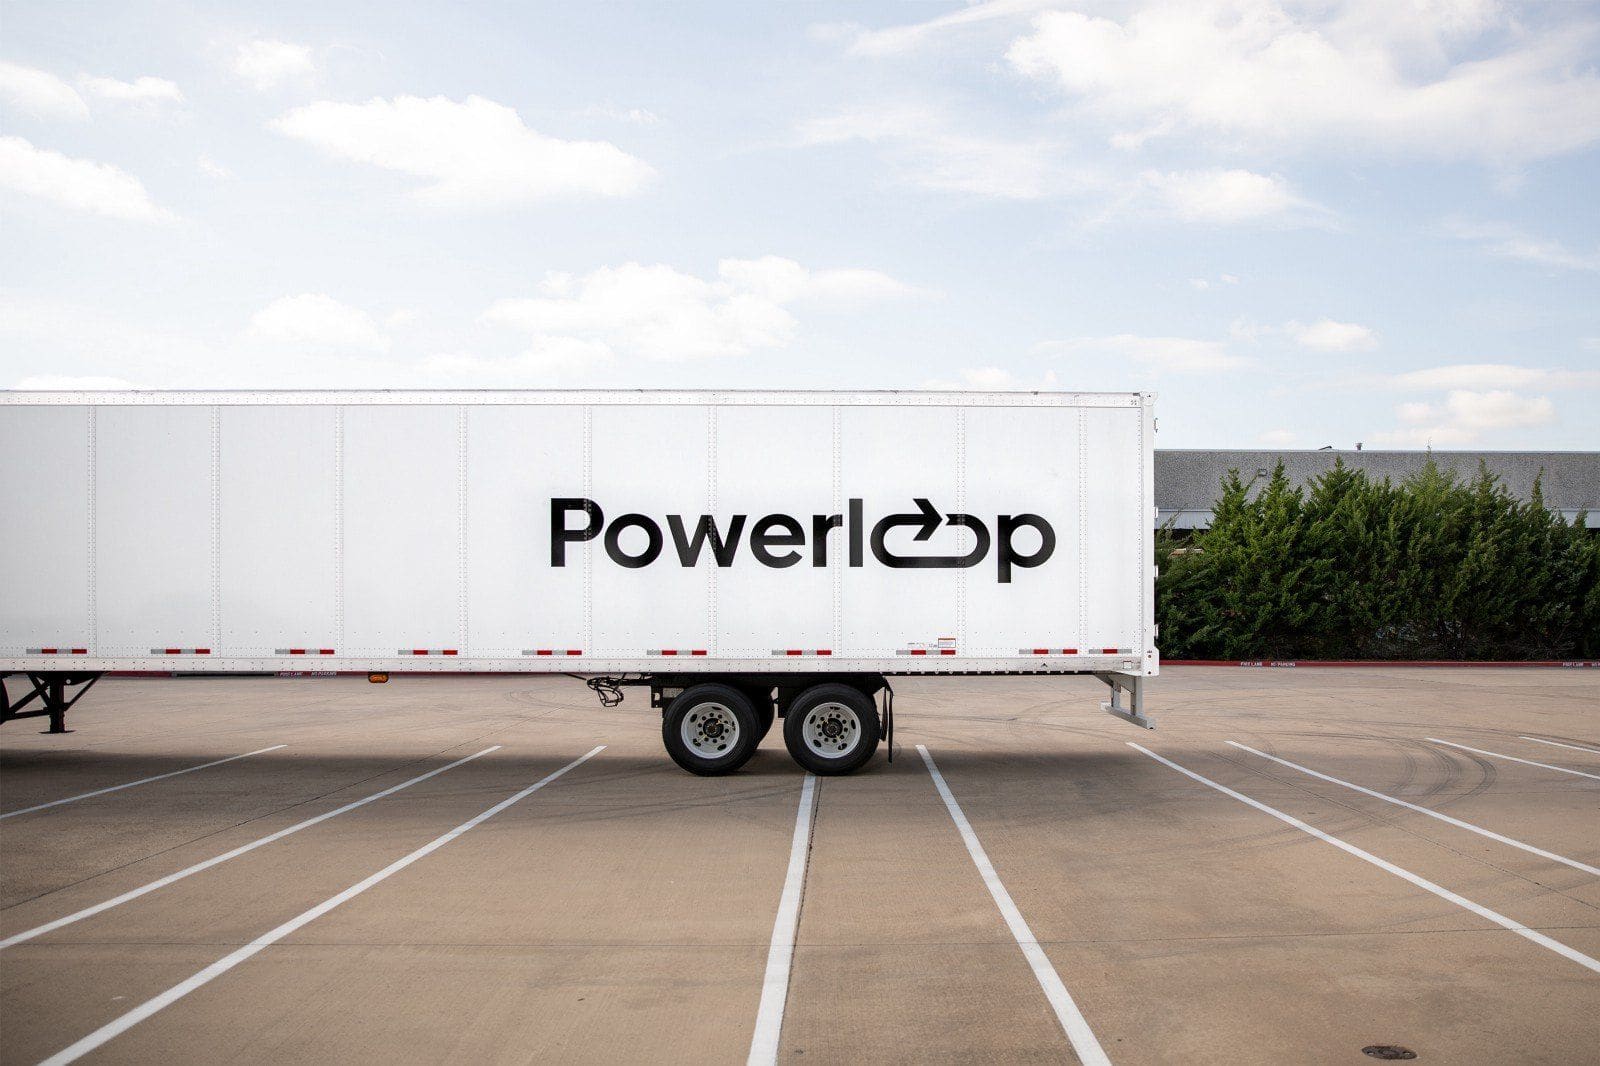 Comment Powerloop aide à débloquer l’accès aux charges alimentées uniquement par le courant électrique